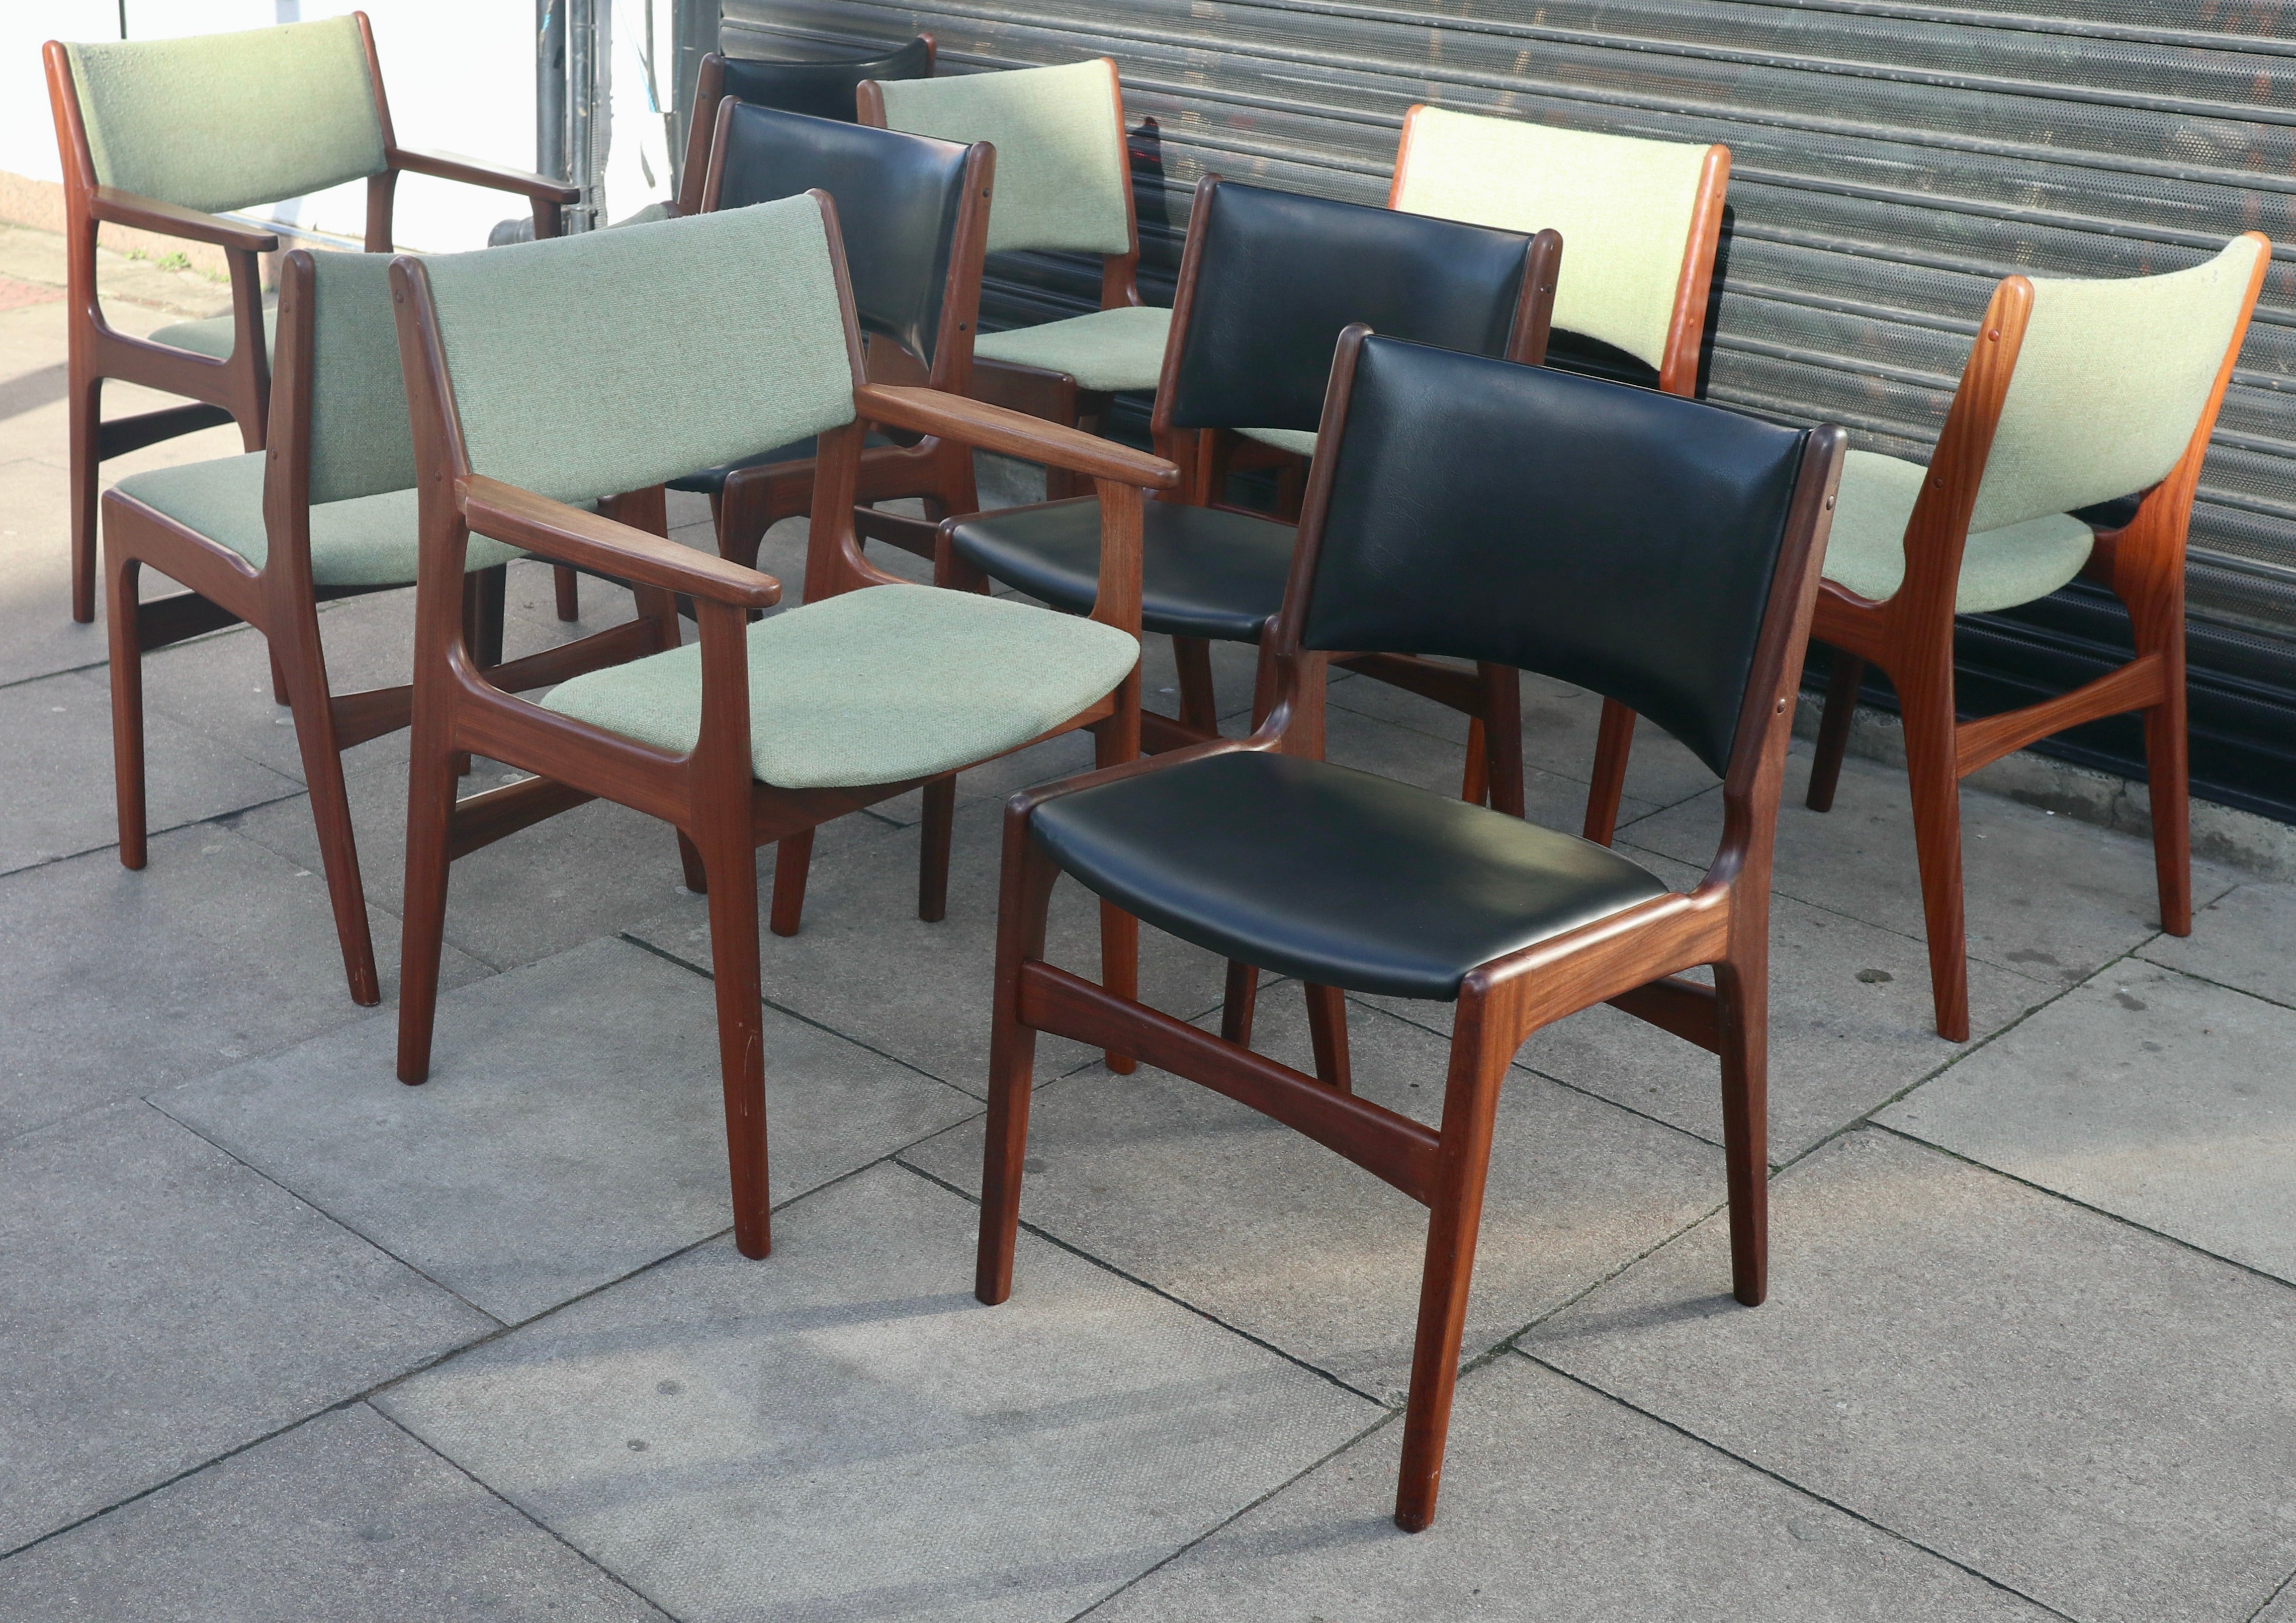 Un ensemble rare et élégant de dix chaises de salle à manger danoises en teck massif, modèle 89, comprenant deux chaises carver, six avec un revêtement textile d'origine de couleur vert clair, et quatre chaises avec un revêtement en vinyle noir